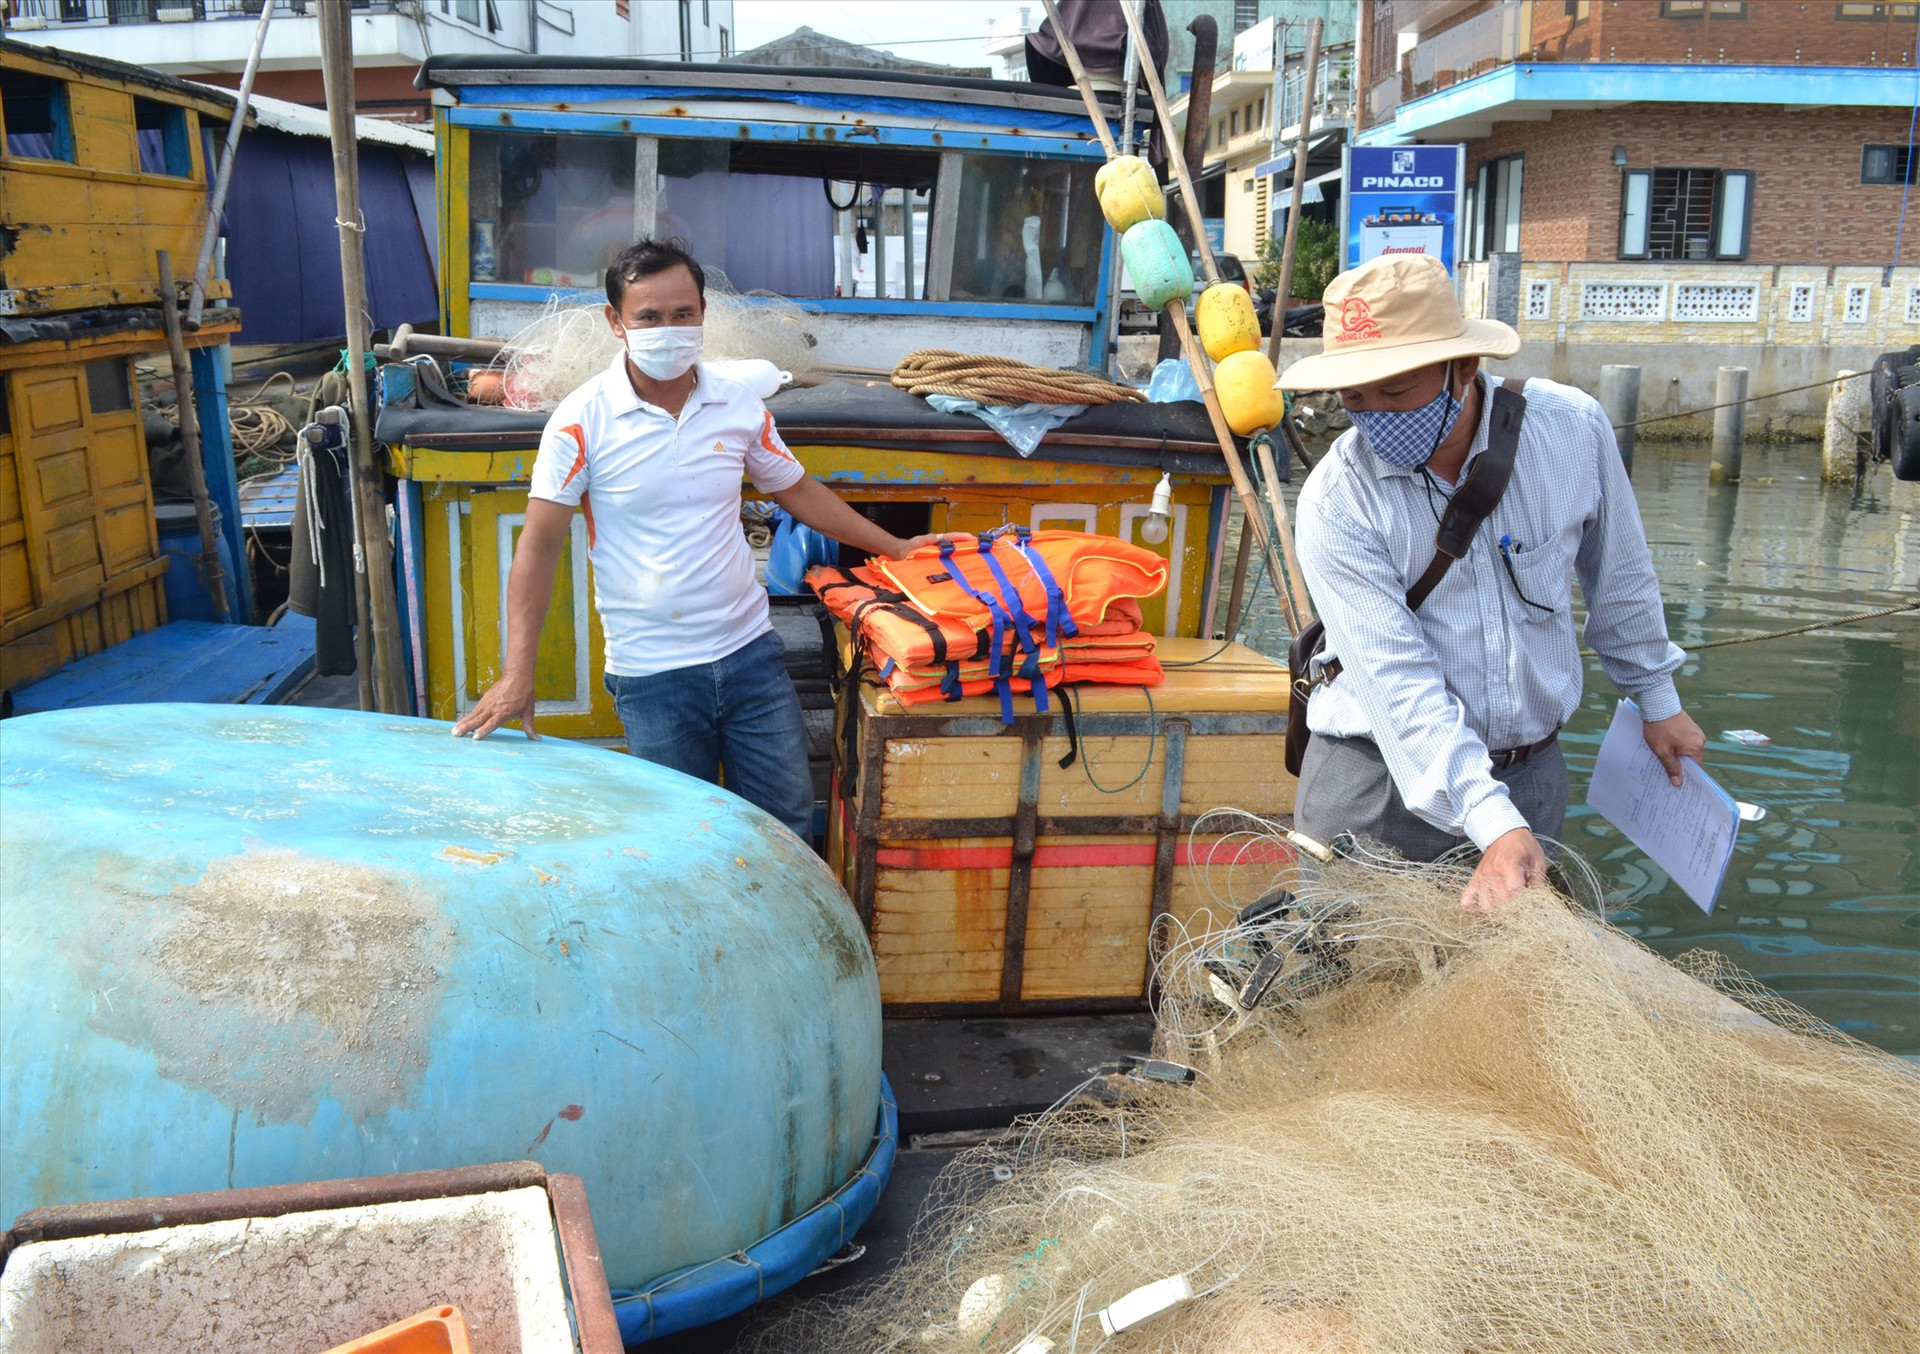 Đăng kiểm viên là cán bộ Chi cục Thủy sản Quảng Nam thực hiện đăng kiểm trên tàu cá của ngư dân huyện Núi Thành. Ảnh: VIỆT NGUYỄN